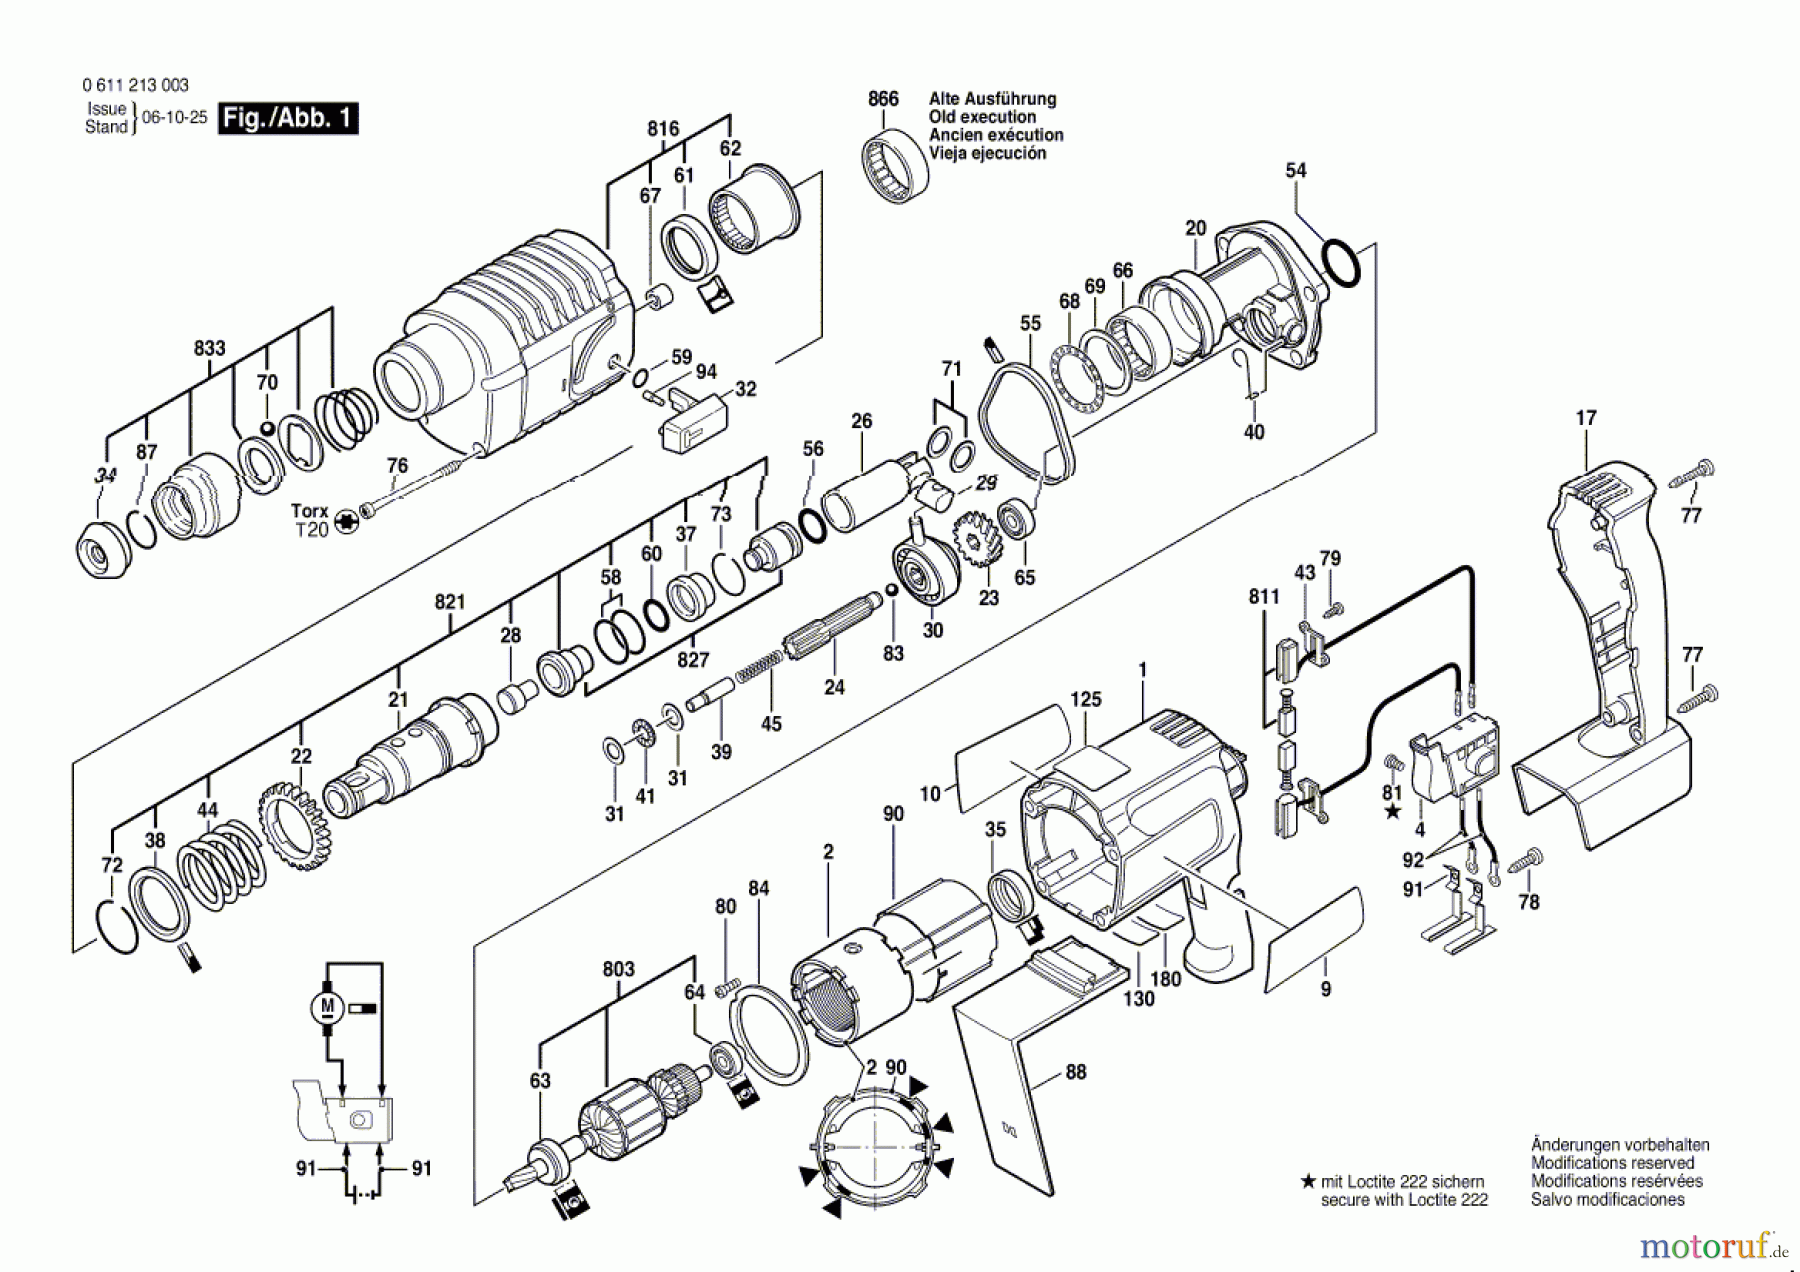  Bosch Akku Werkzeug Akku-Bohrhammer GBH 24 V Seite 1